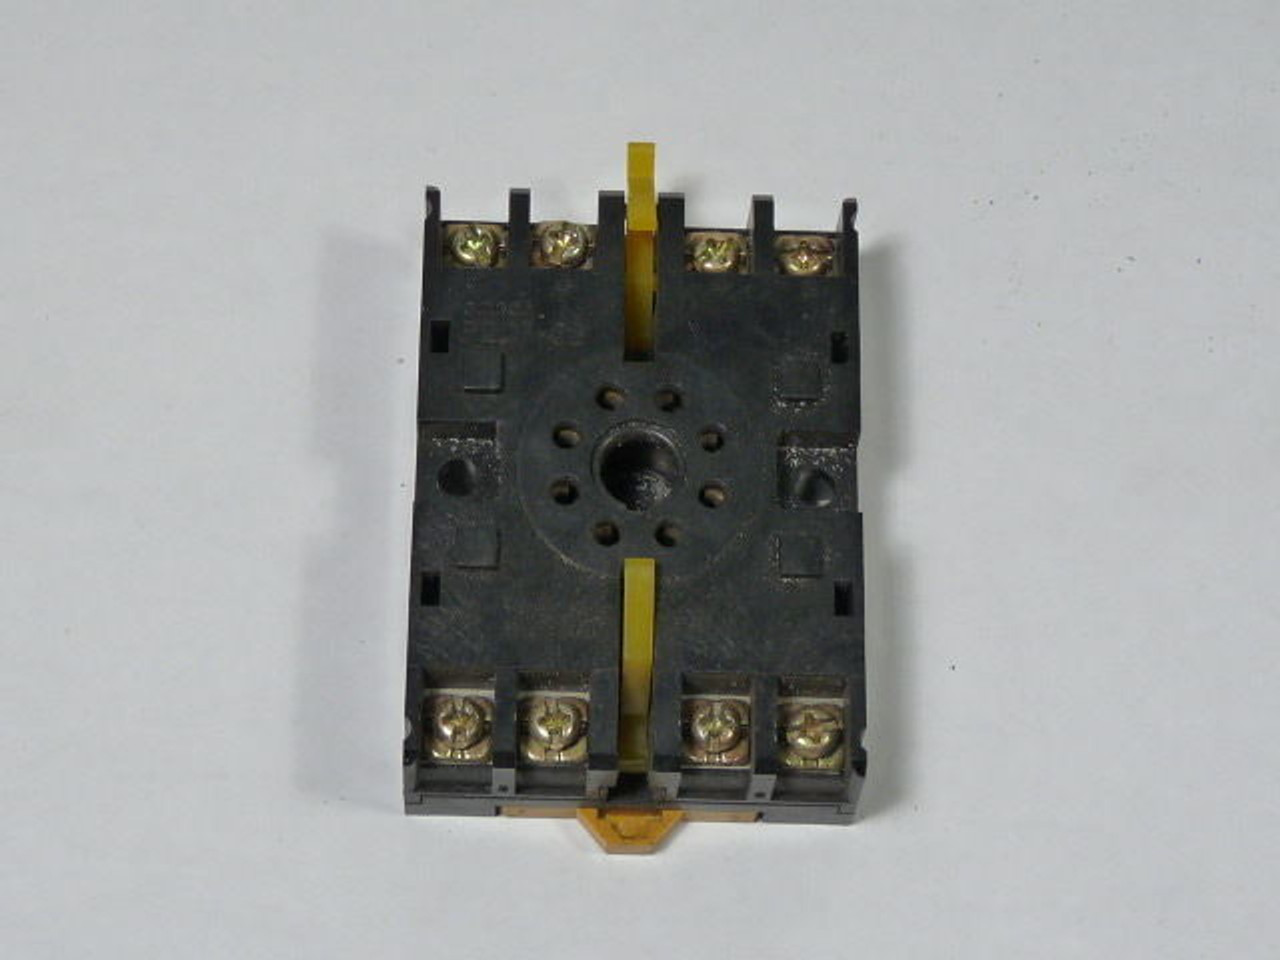 Omron P2CF-08 Relay Socket 8Pin 240V for Use w/ H3CR-F USED